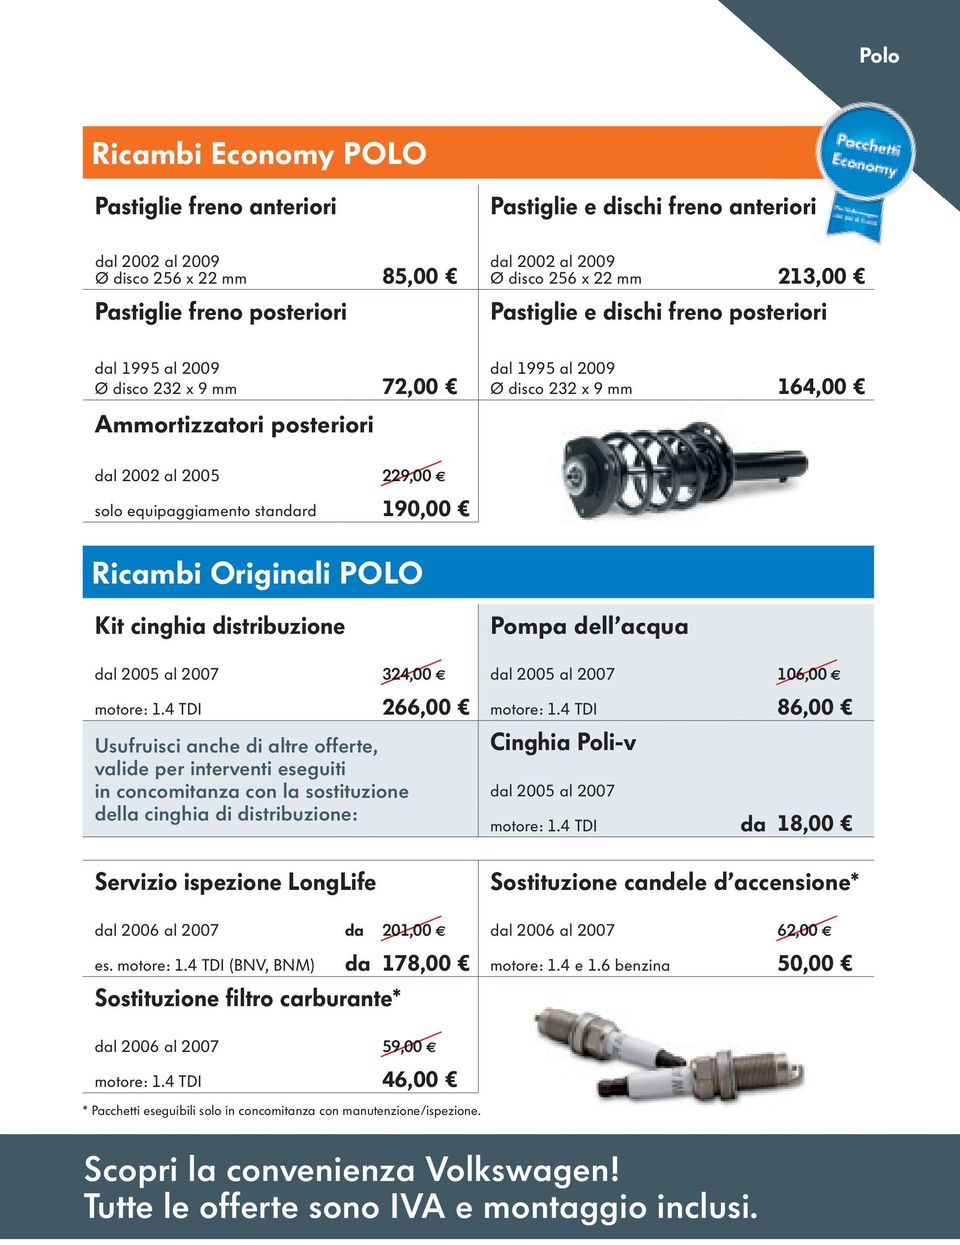 standard 229,00 190,00 Ricambi Originali POLO Kit cinghia distribuzione Pompa dell acqua dal 2005 al 2007 324,00 dal 2005 al 2007 motore: 1.4 TDI 266,00 motore: 1.